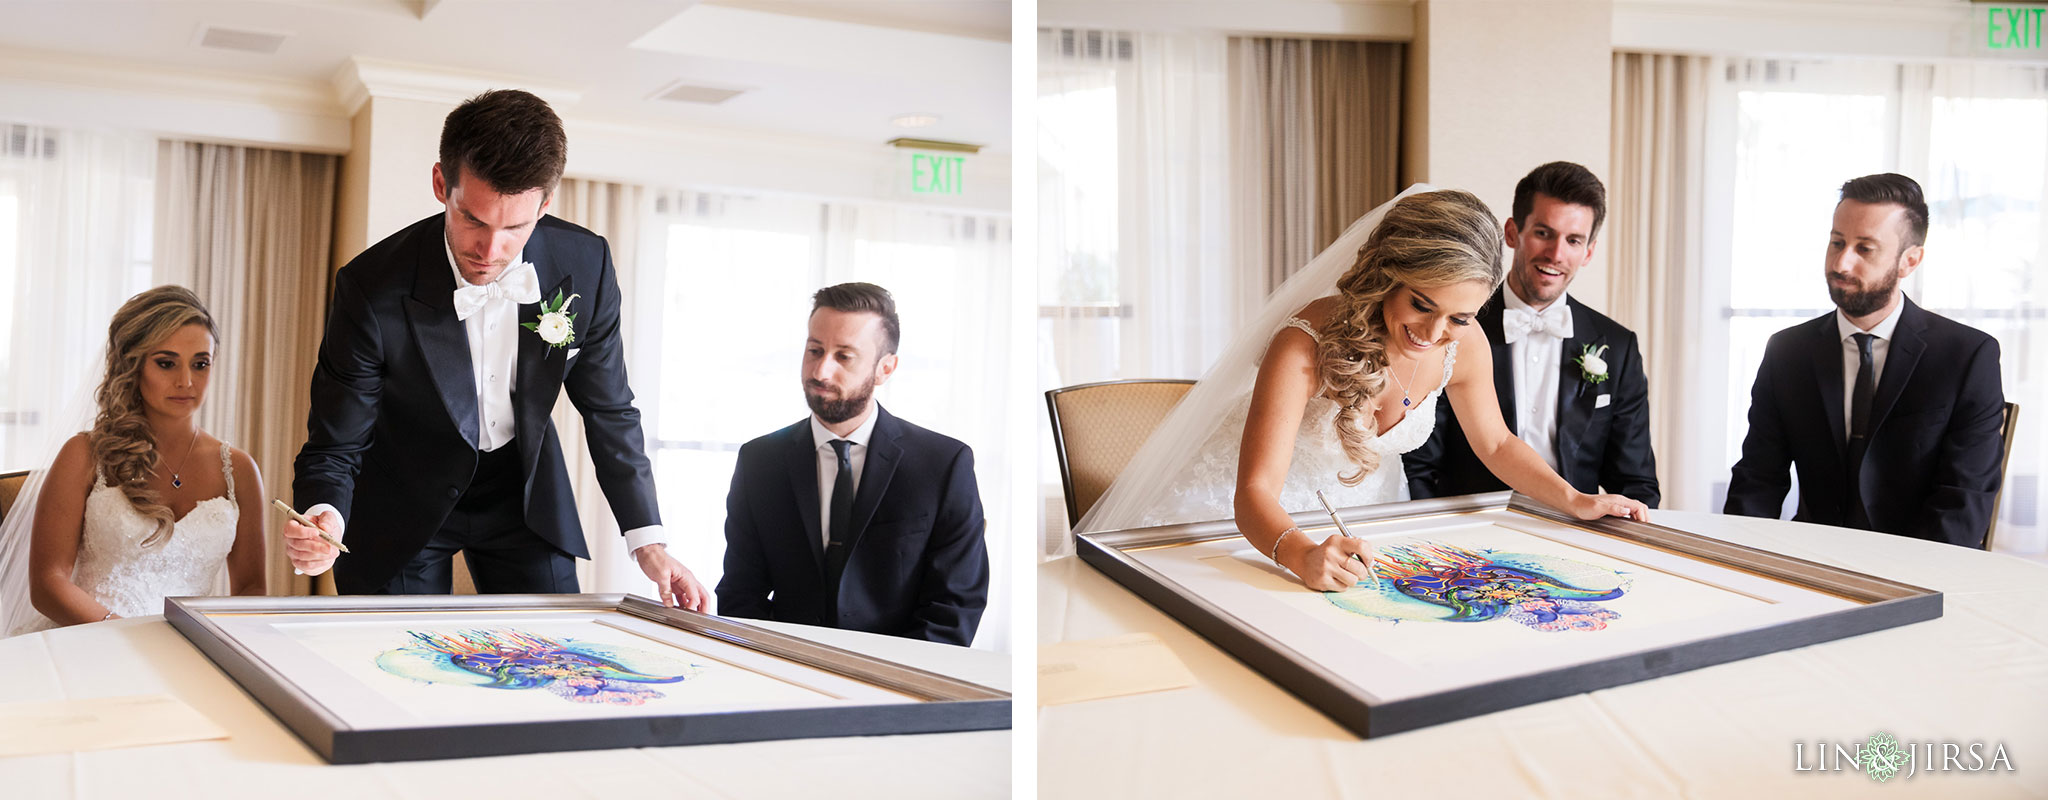 21 balboa bay wedding ketubah signing photography